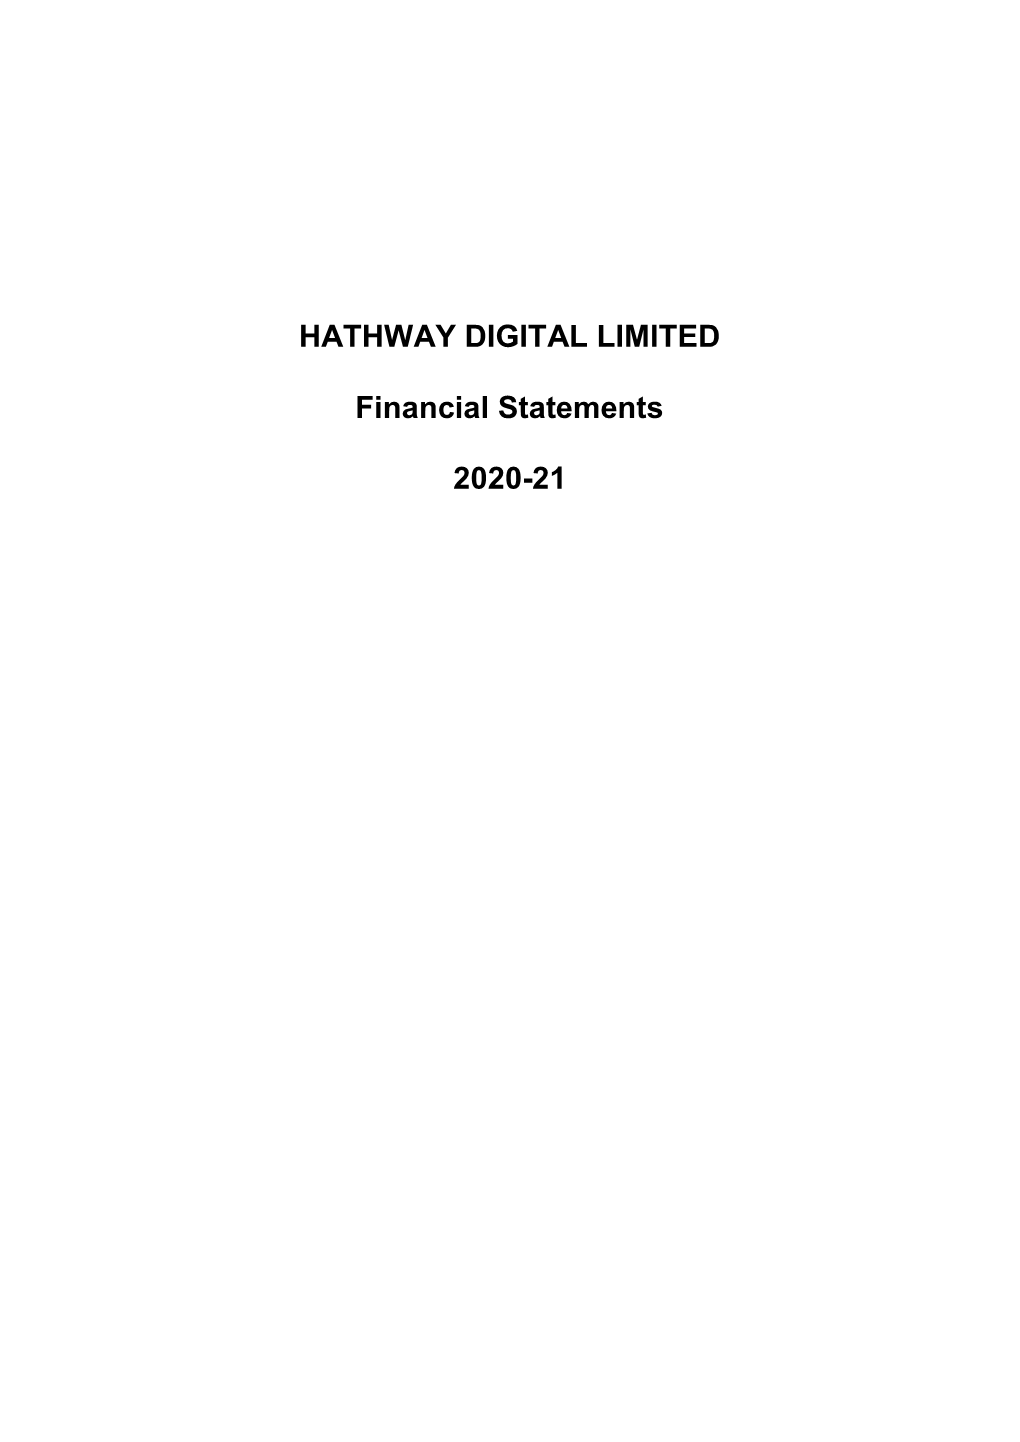 HATHWAY DIGITAL LIMITED Financial Statements 2020-21